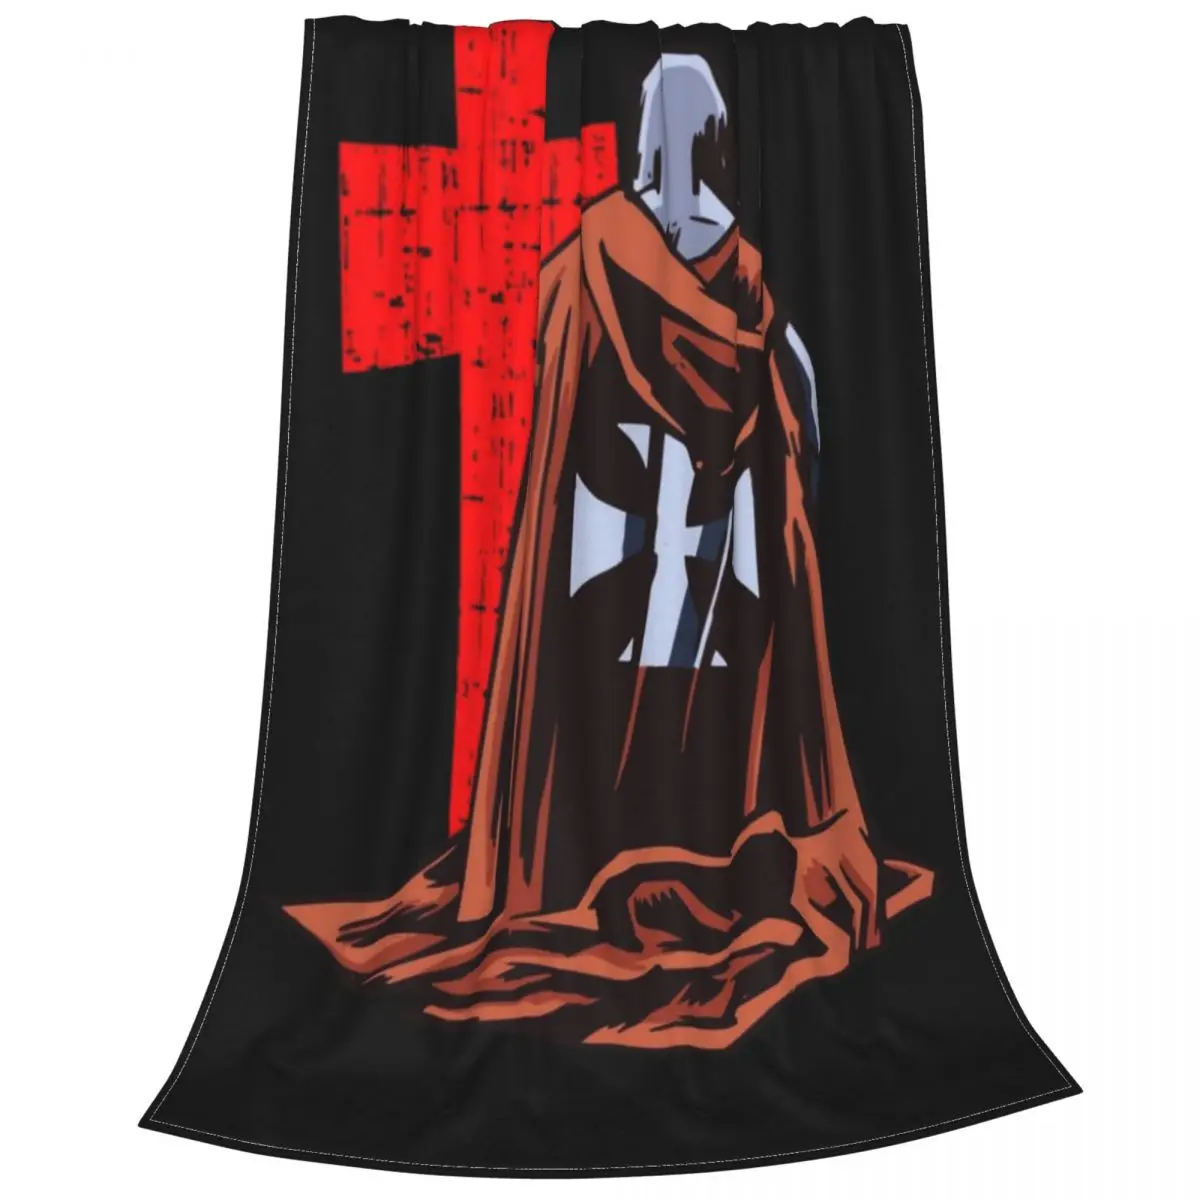 

Бархатное одеяло Brave Knight Templar s, вельветовое украшение, средневековый костюм, многофункциональное мягкое покрывало для кровати, диван-кроват...